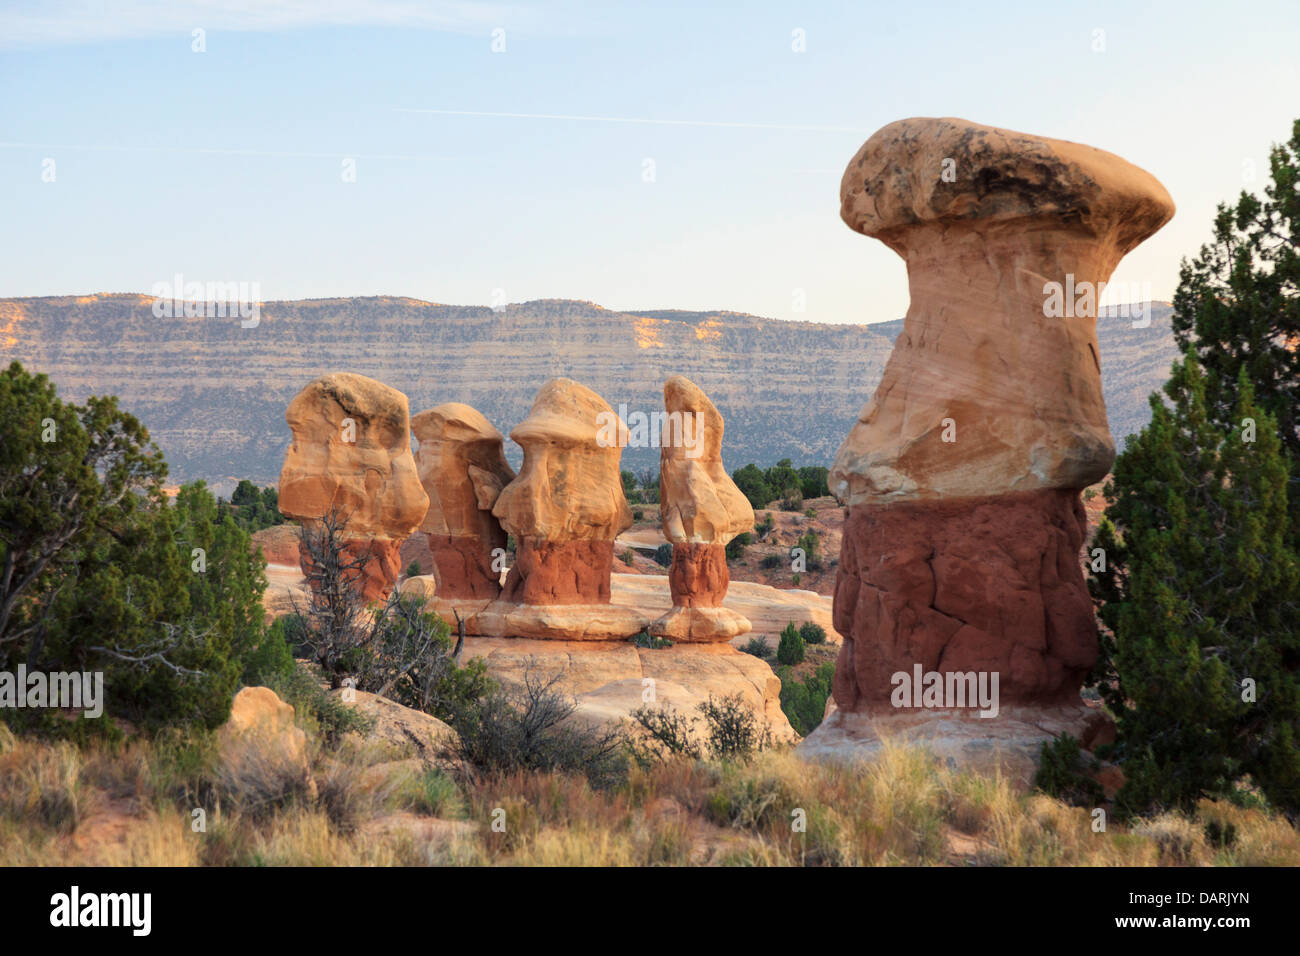 Stati Uniti d'America, Utah, la grande scala - Escalante monumento nazionale, giardino del diavolo Hoodos Foto Stock